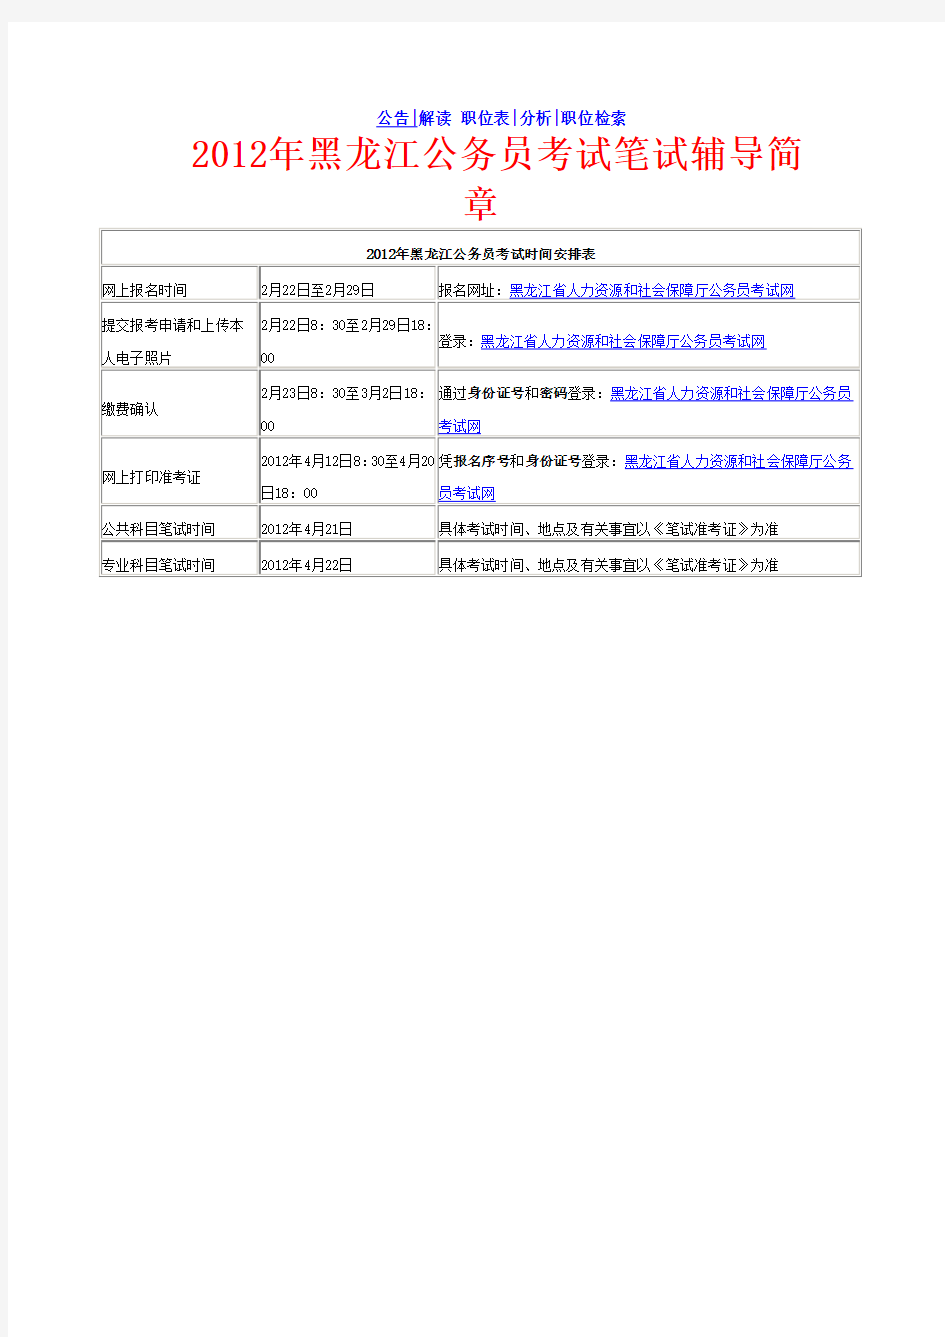 黑龙江公务员考试时间安排表